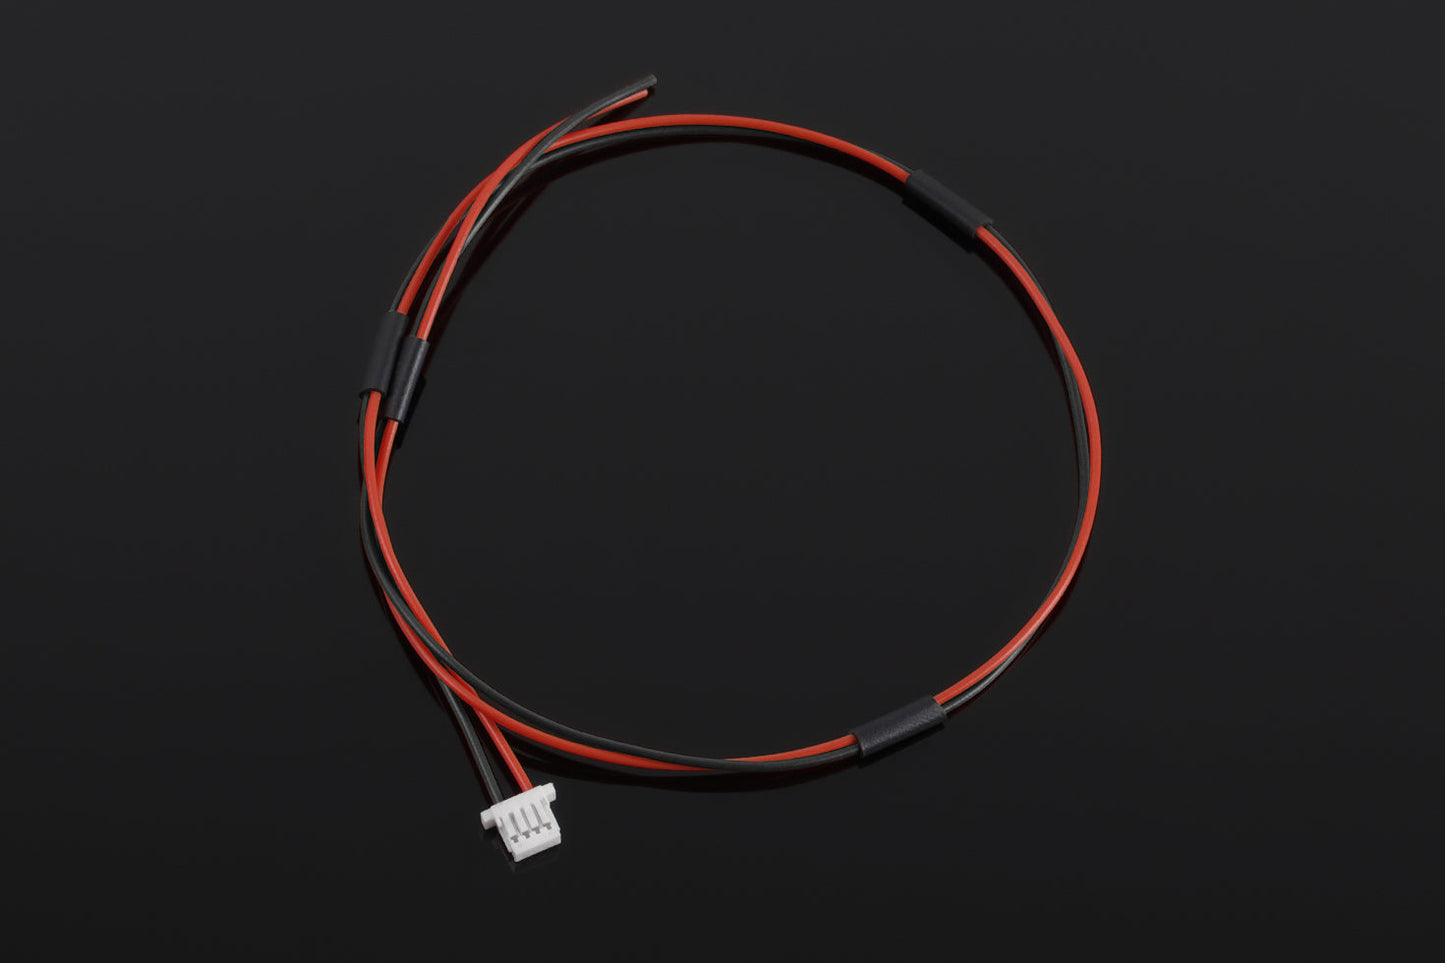 Uniwersalny przewód zasilający DIY (do GEL BLASTER / Magazynek elektryczny / Naświetlacz) do TITANa II Bluetooth®